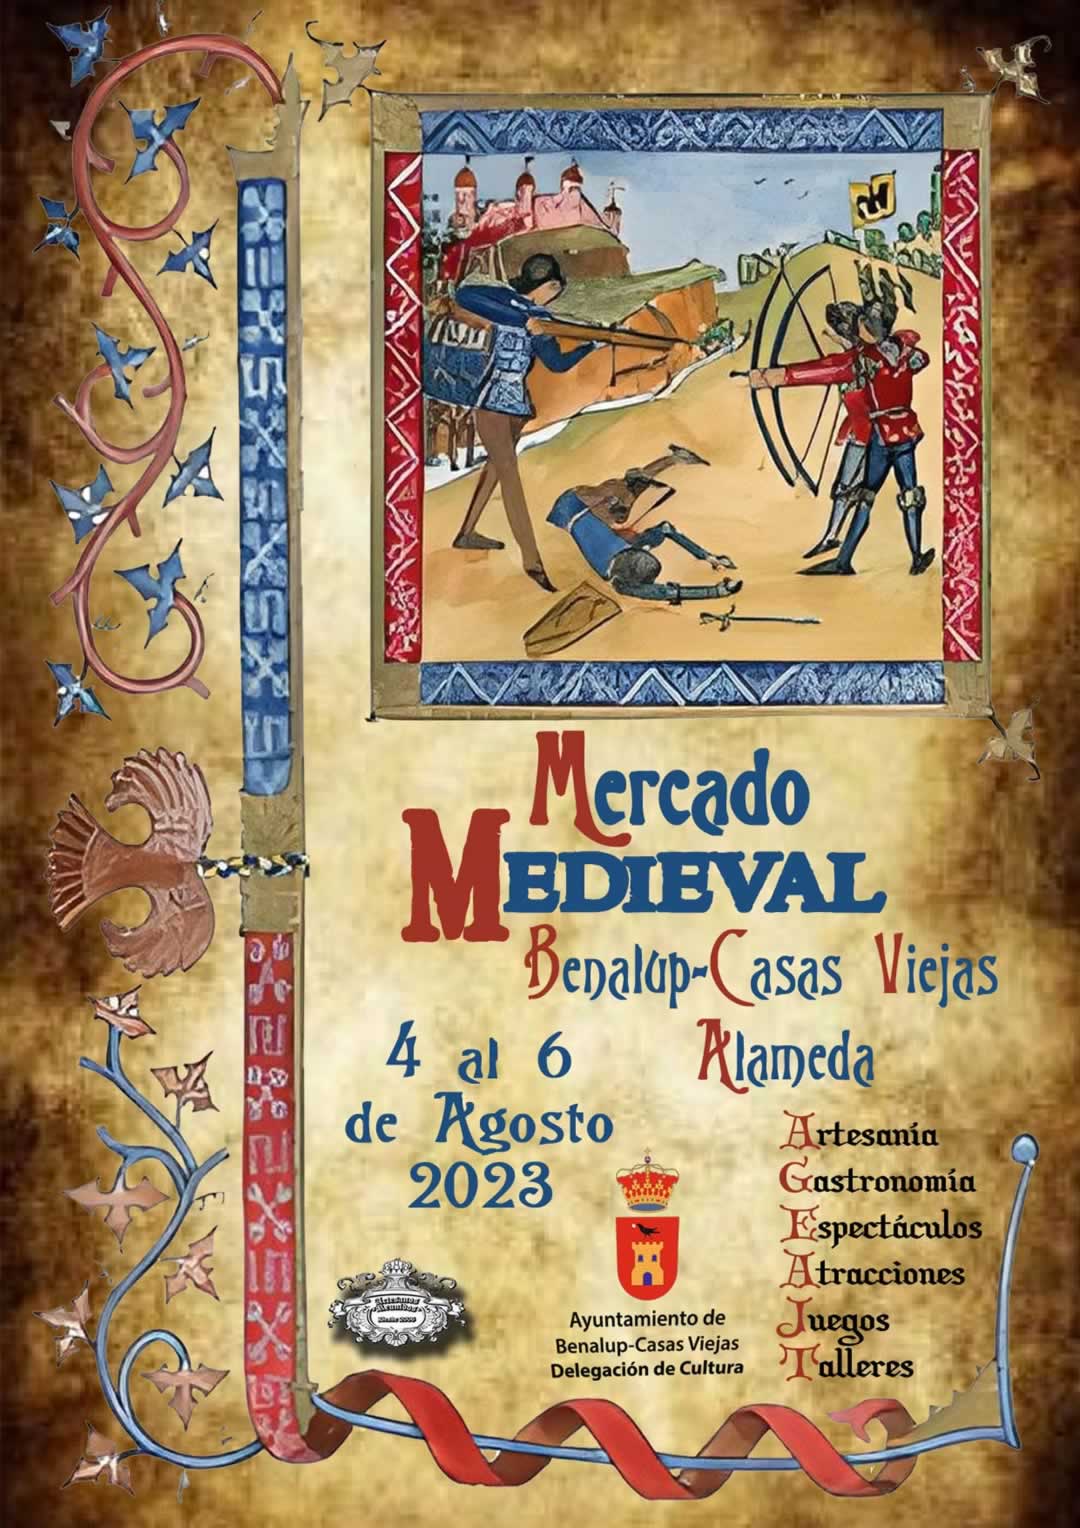 Mercado medieval en Benalup-Casas Viejas, Cadiz 04 al 06 de Agosto 2023